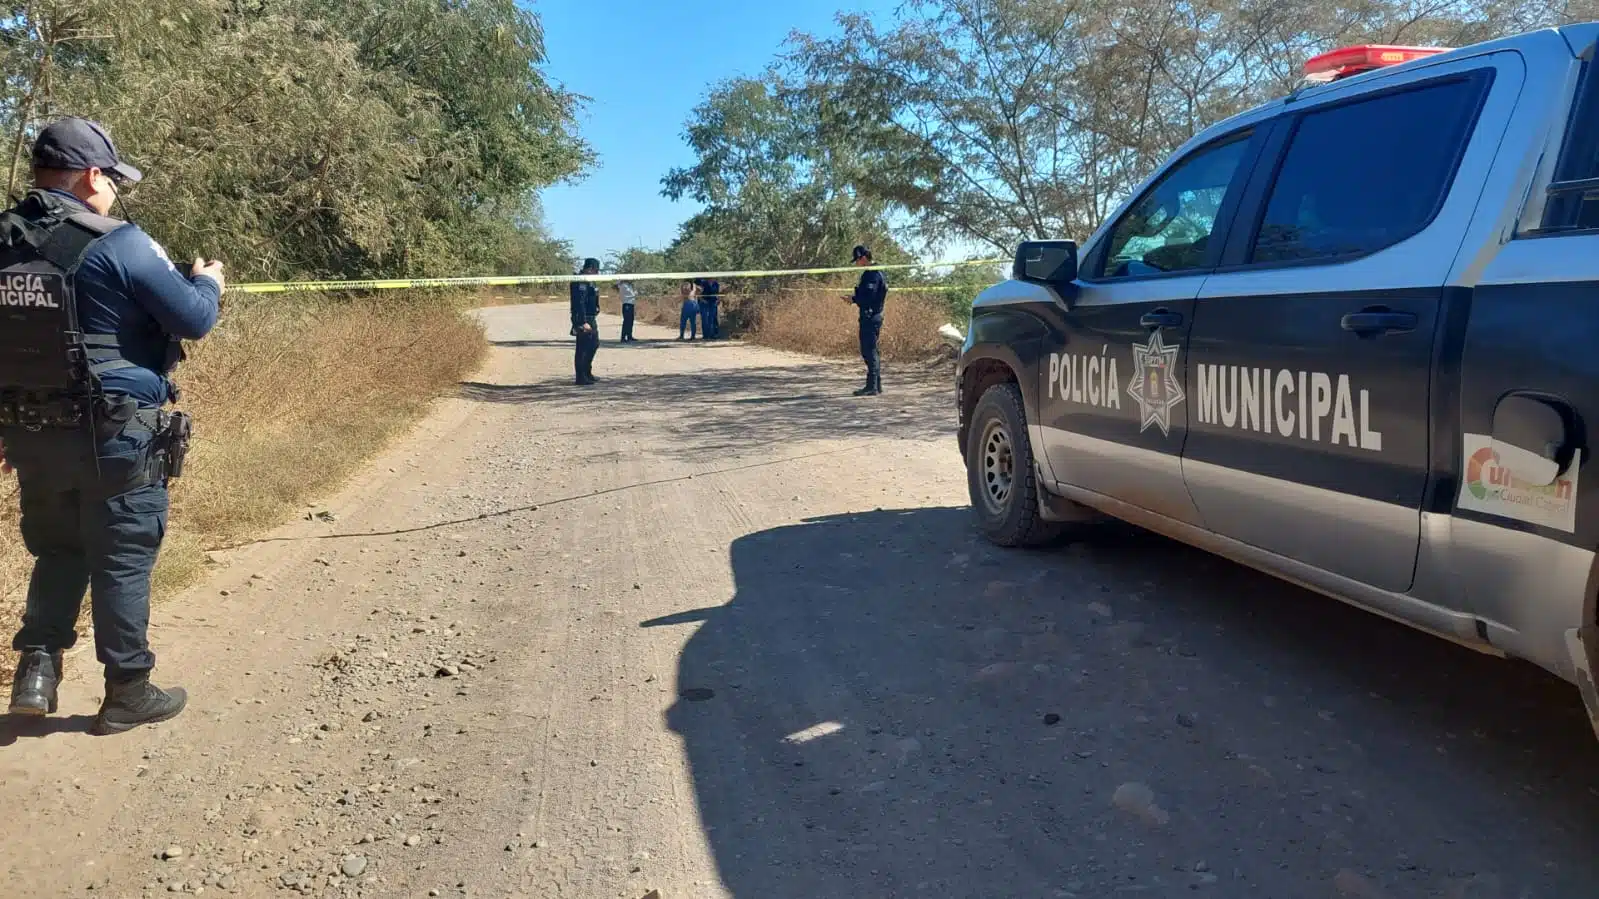 Patrulla y elementos de la Policía Municipal de Culiacán y cinta amarilla delimitando el área donde encontraron a don Eliazar sin vida